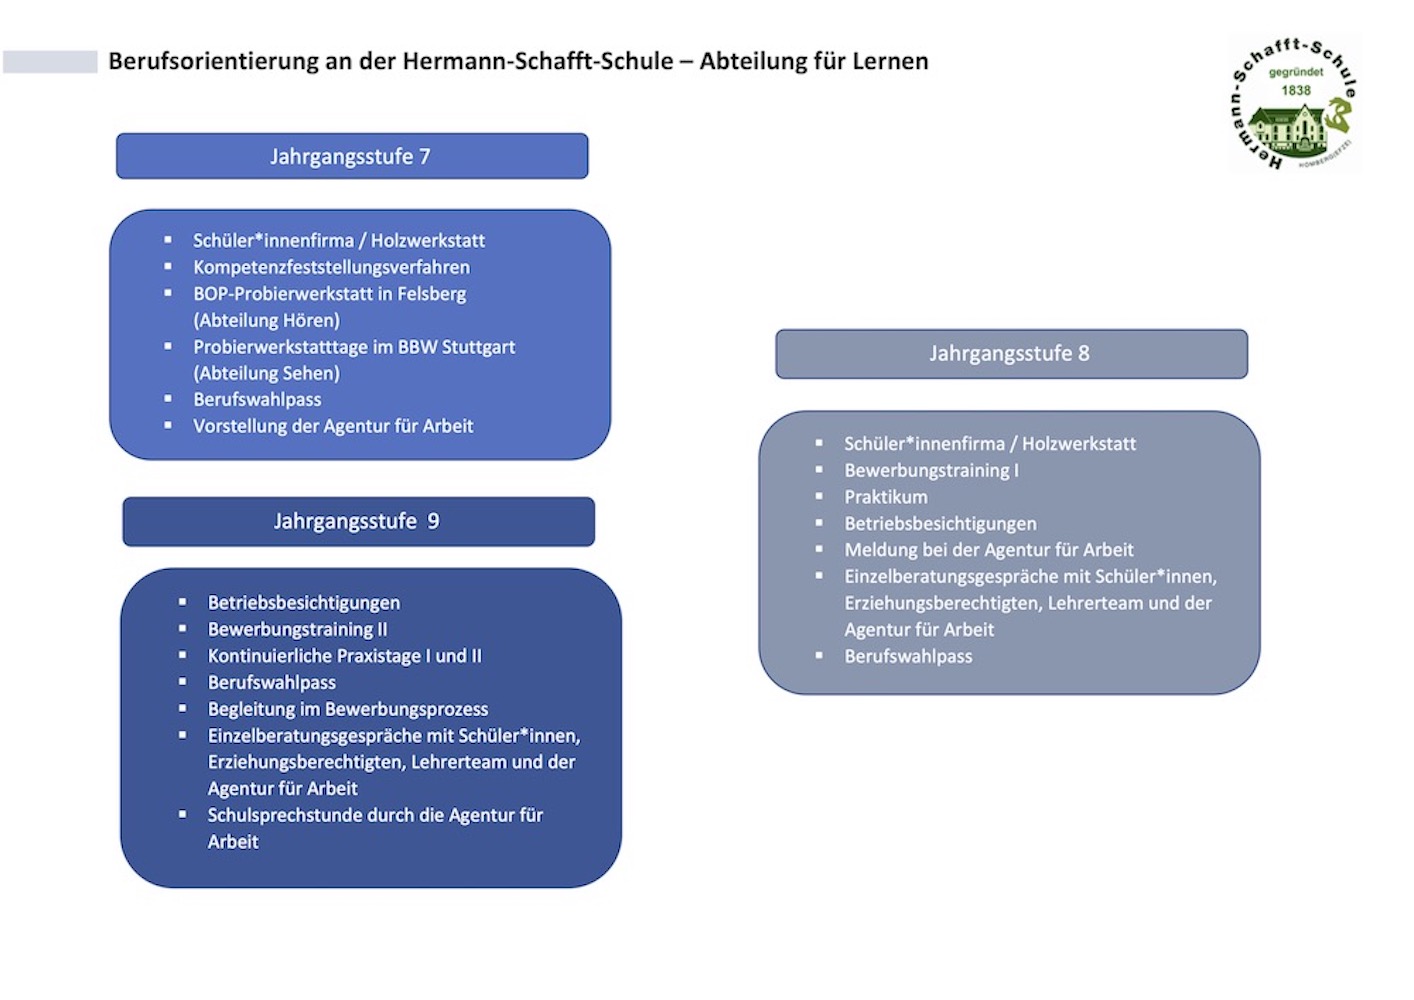 Überblick Berufsorientierung an der Hermann-Schafft-Schule – Abteilung für Lernen als PDF